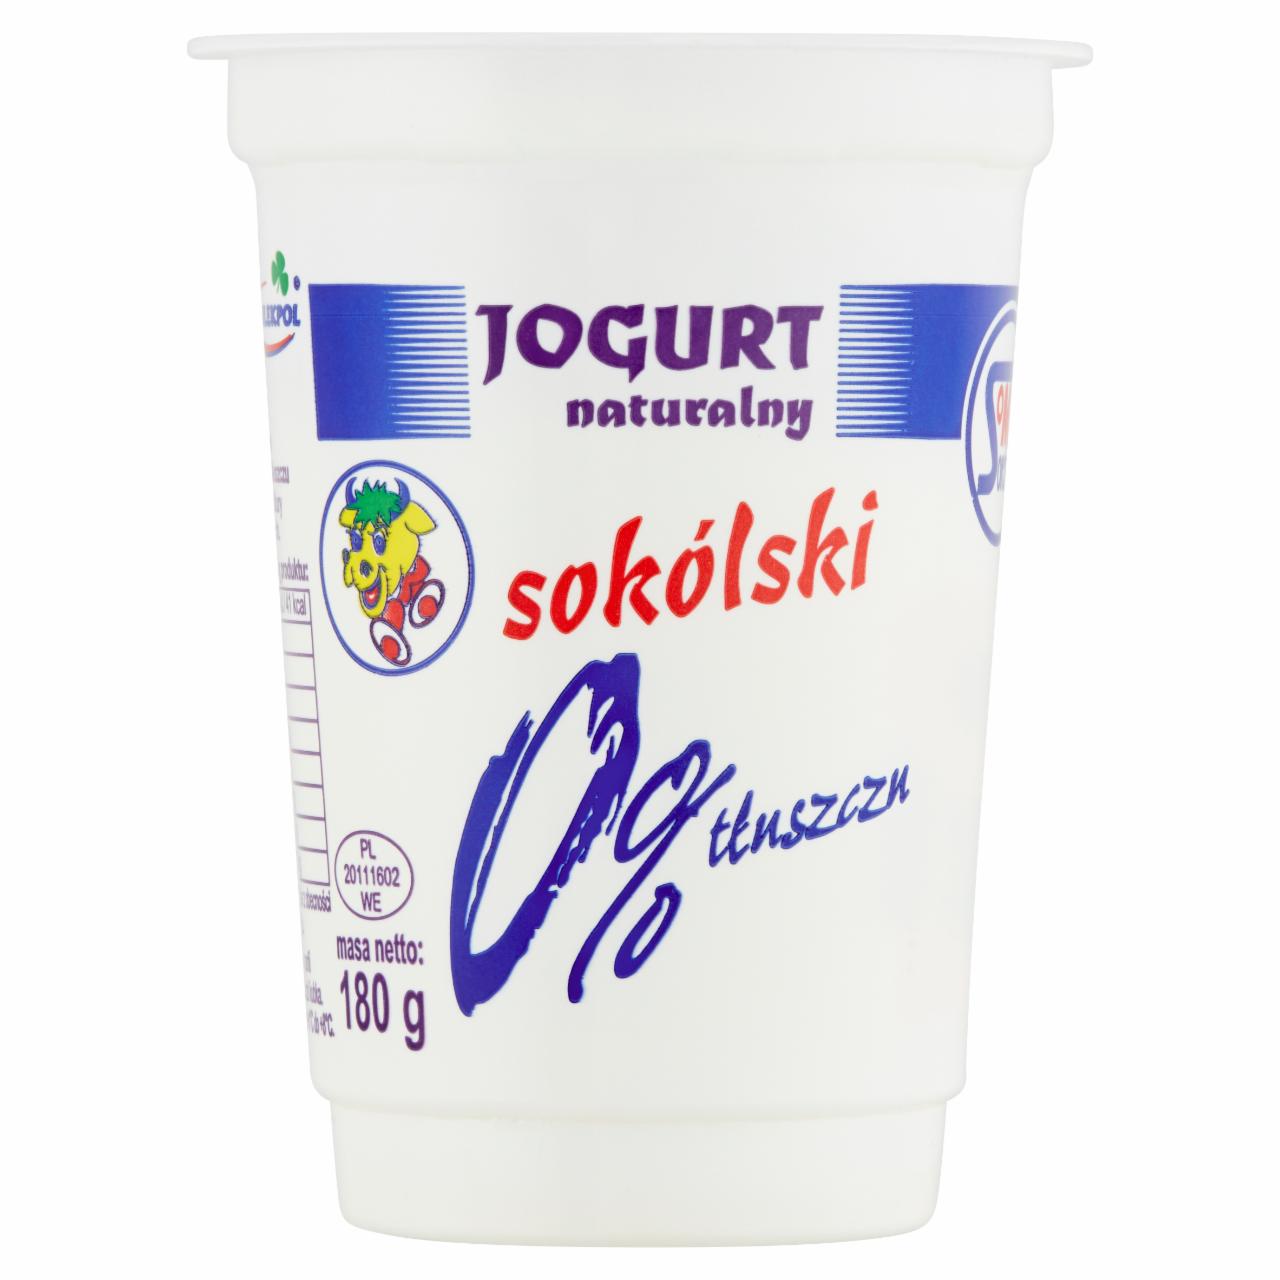 Zdjęcia - Jogurt naturalny sokólski 0% tłuszczu 180 g